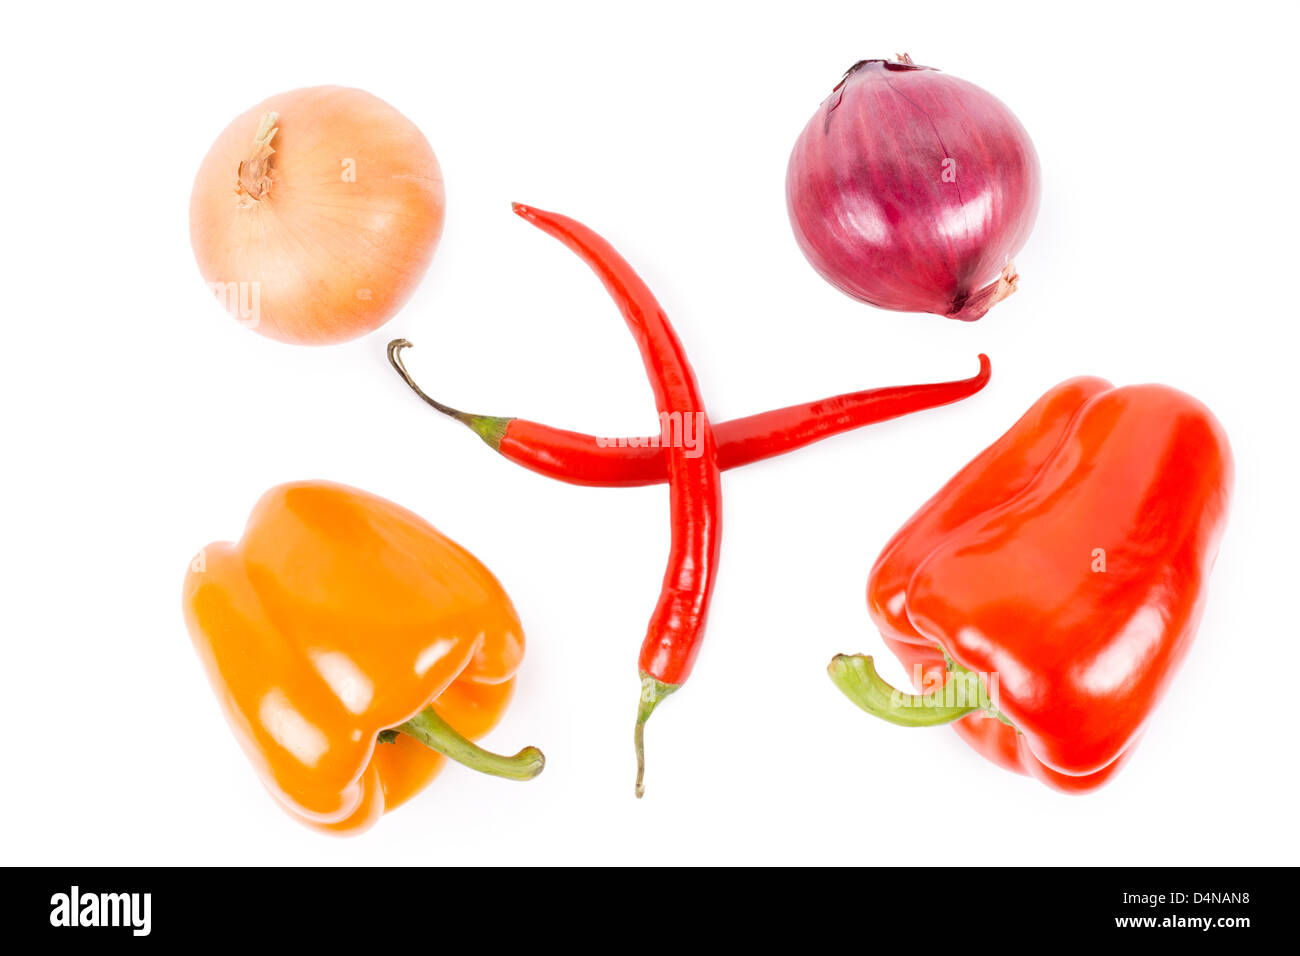 Draufsicht auf eine Anordnung von Bauernhof frischen braunen und roten Zwiebeln, orange und rote süße Paprika und zwei gekreuzt red hot chili Peppers isoliert auf weiss. Stockfoto